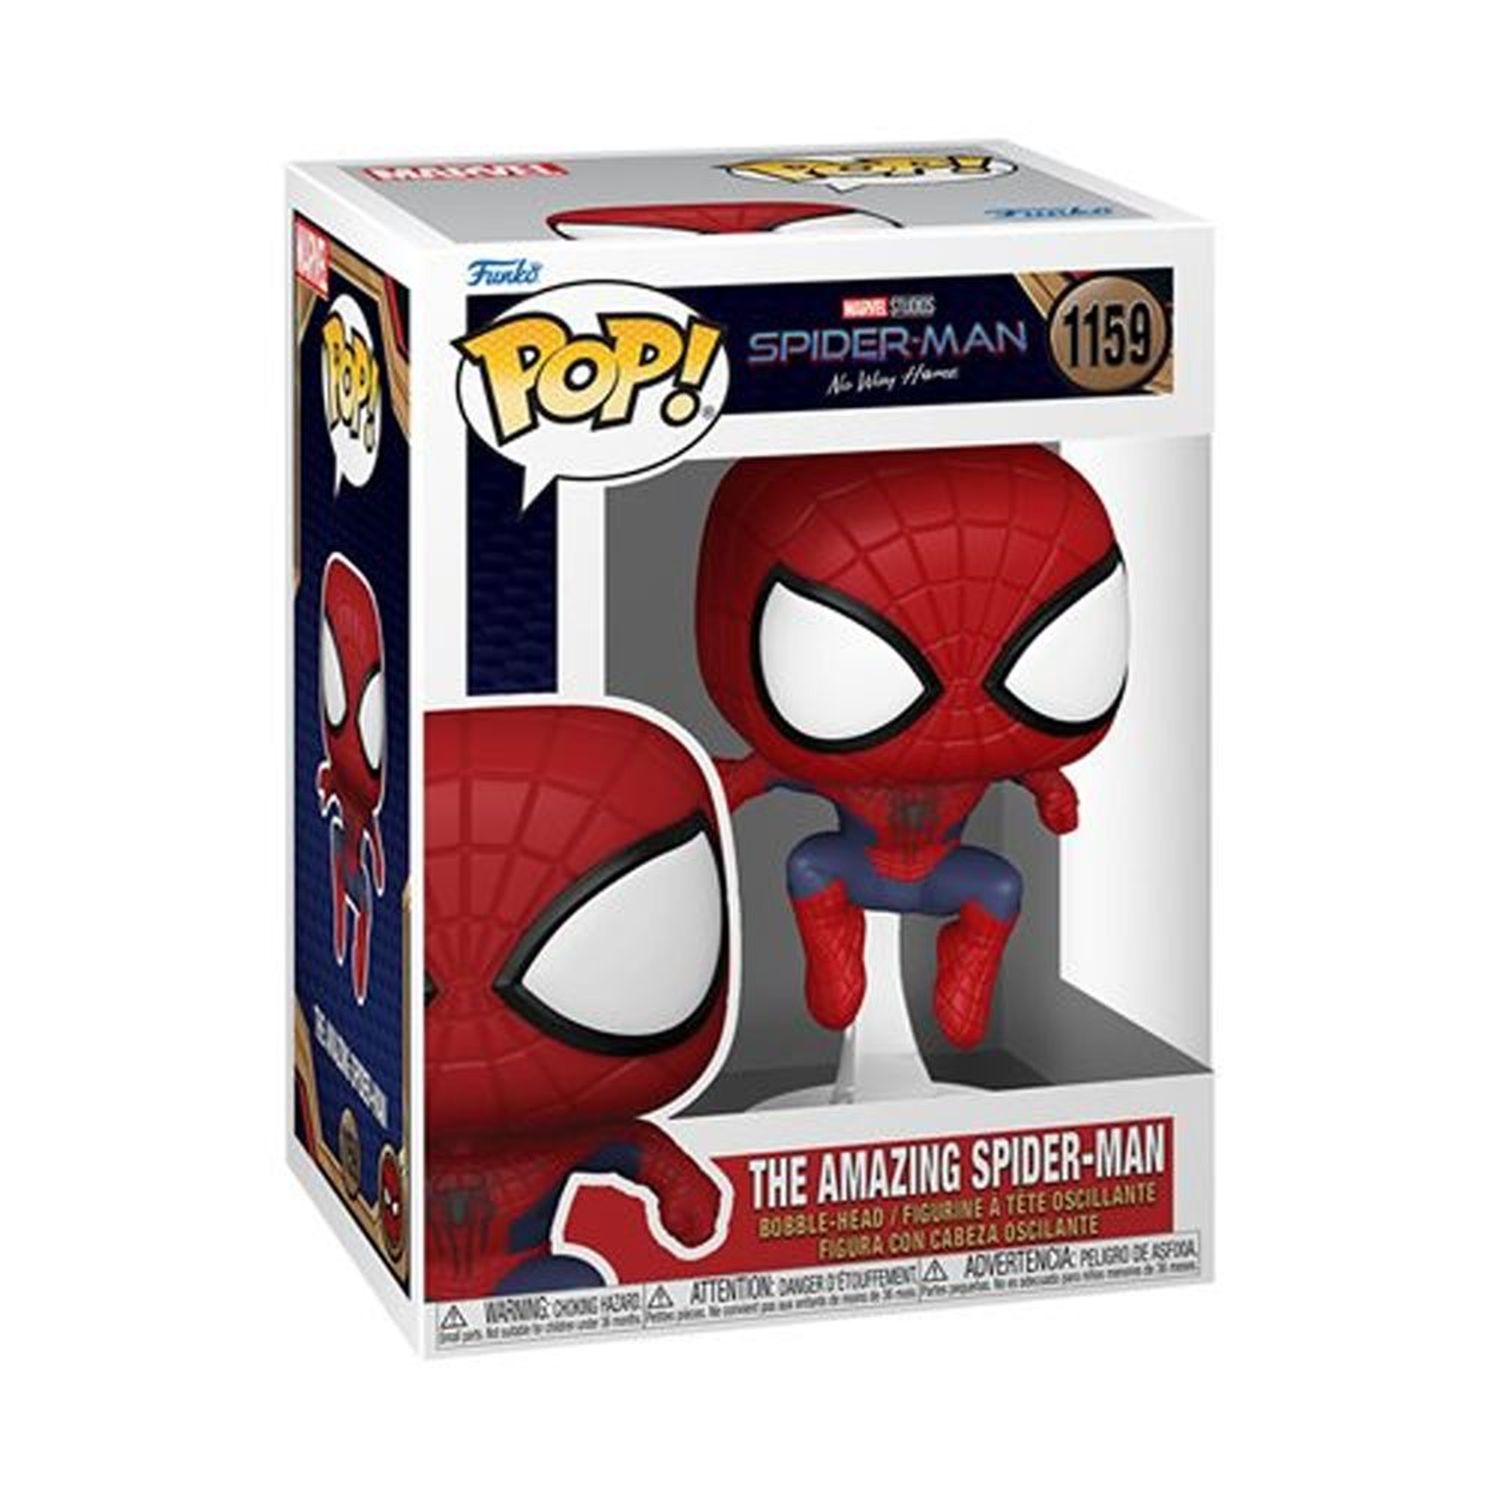 Spiderman Funko Pop de San Valentín, ¿cuánto cuesta y dónde lo